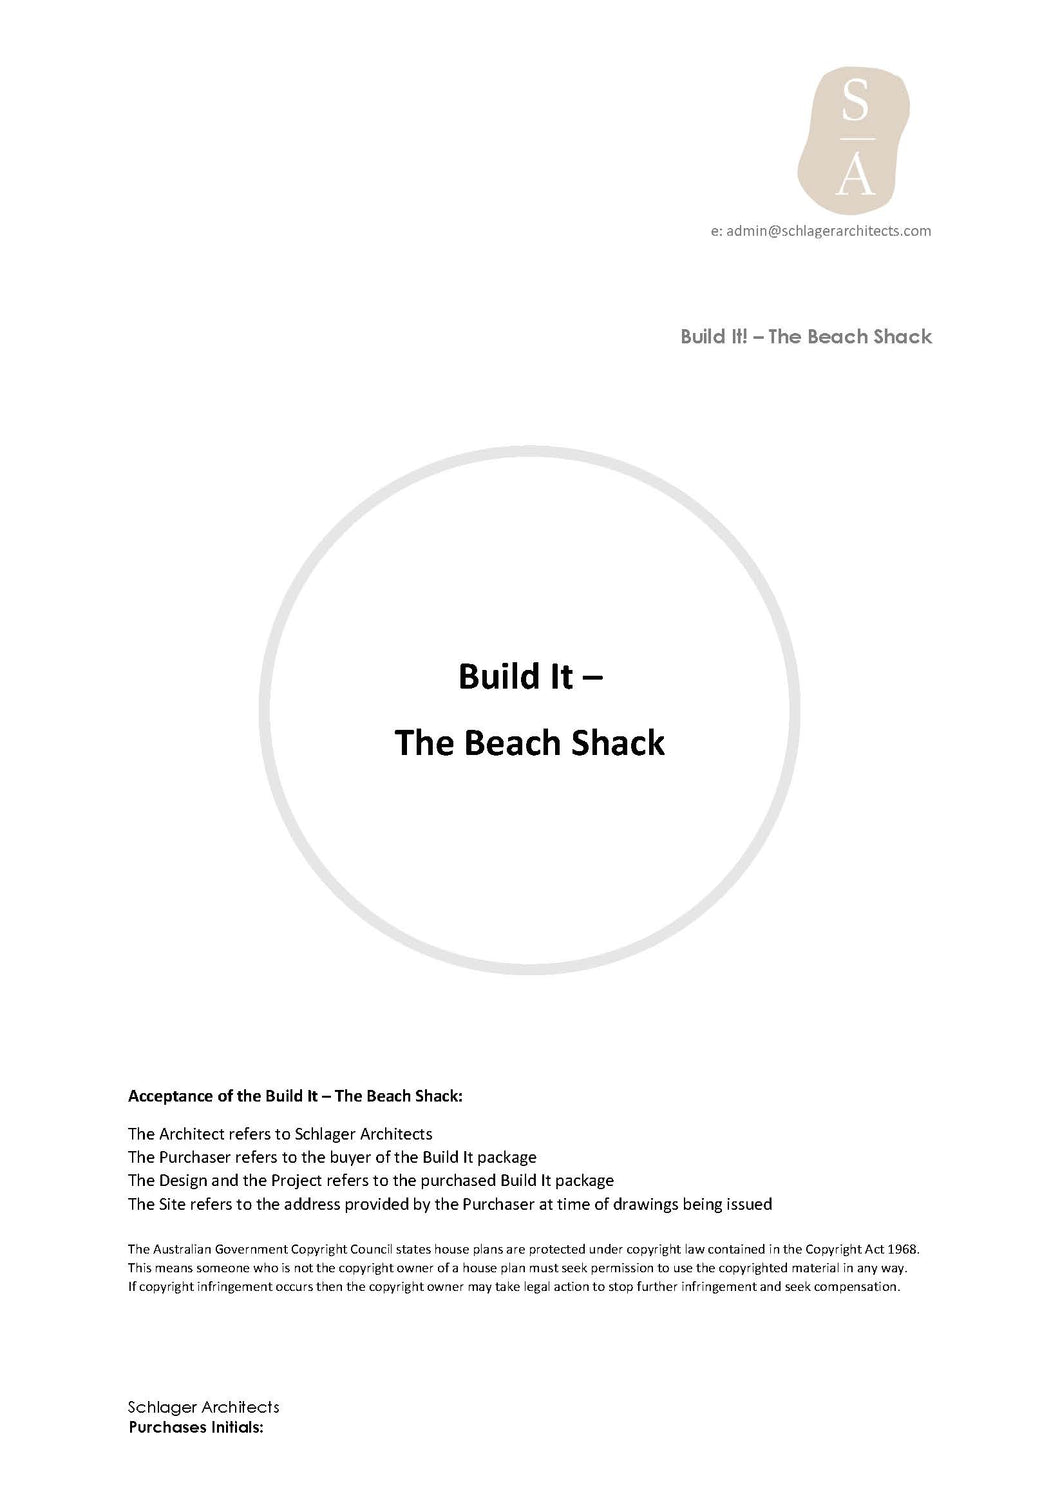 Shop Our House Plans - Build It - The Beach Shack